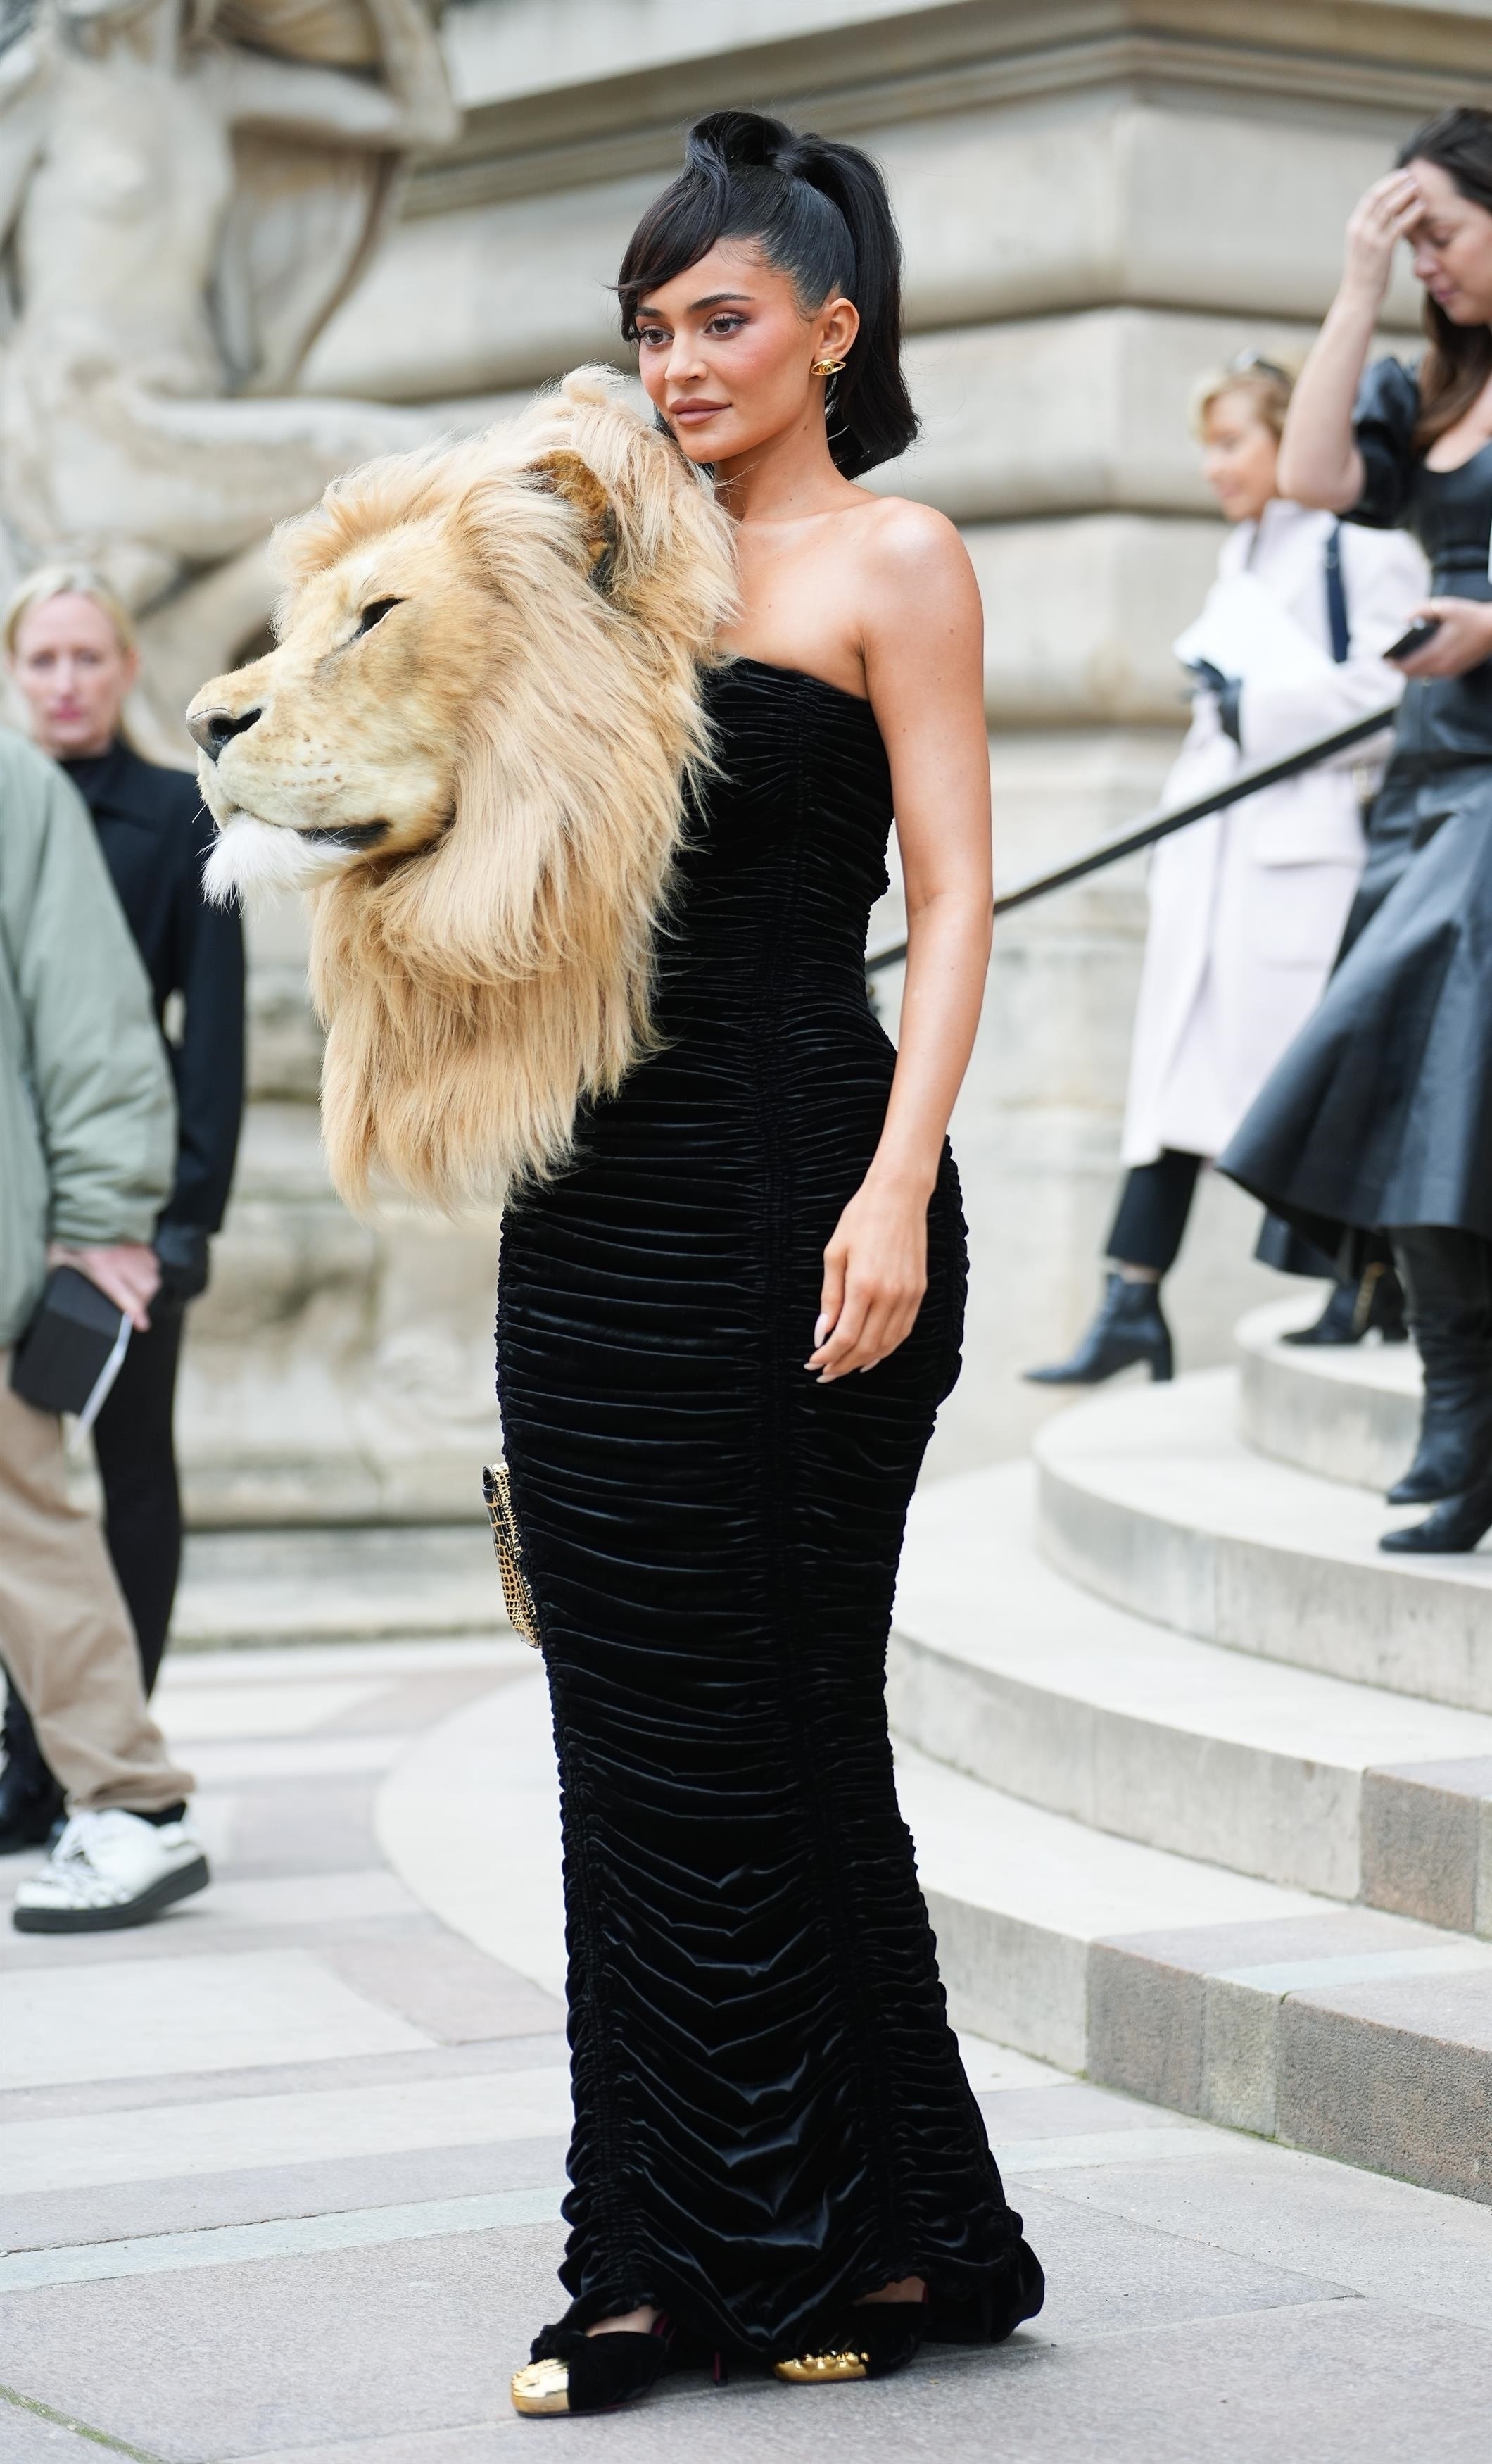 "Высочайшее искусство": Ирина Шейк и Кендалл Дженнер напялили на себя чучела львов на модном показе Schiaparelli